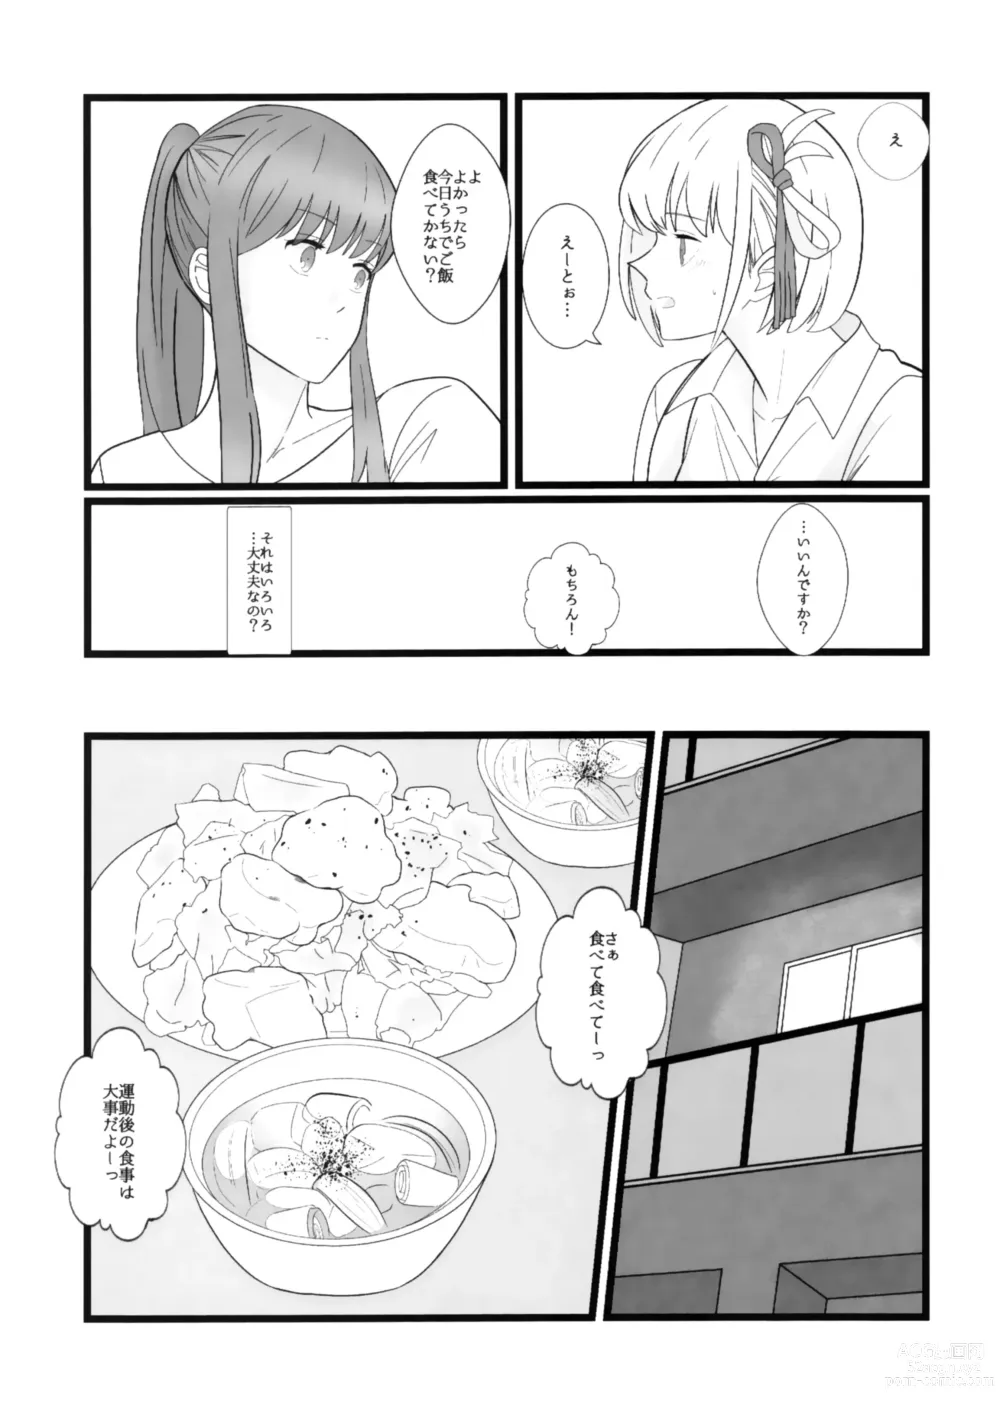 Page 9 of doujinshi Takina to Chisato.